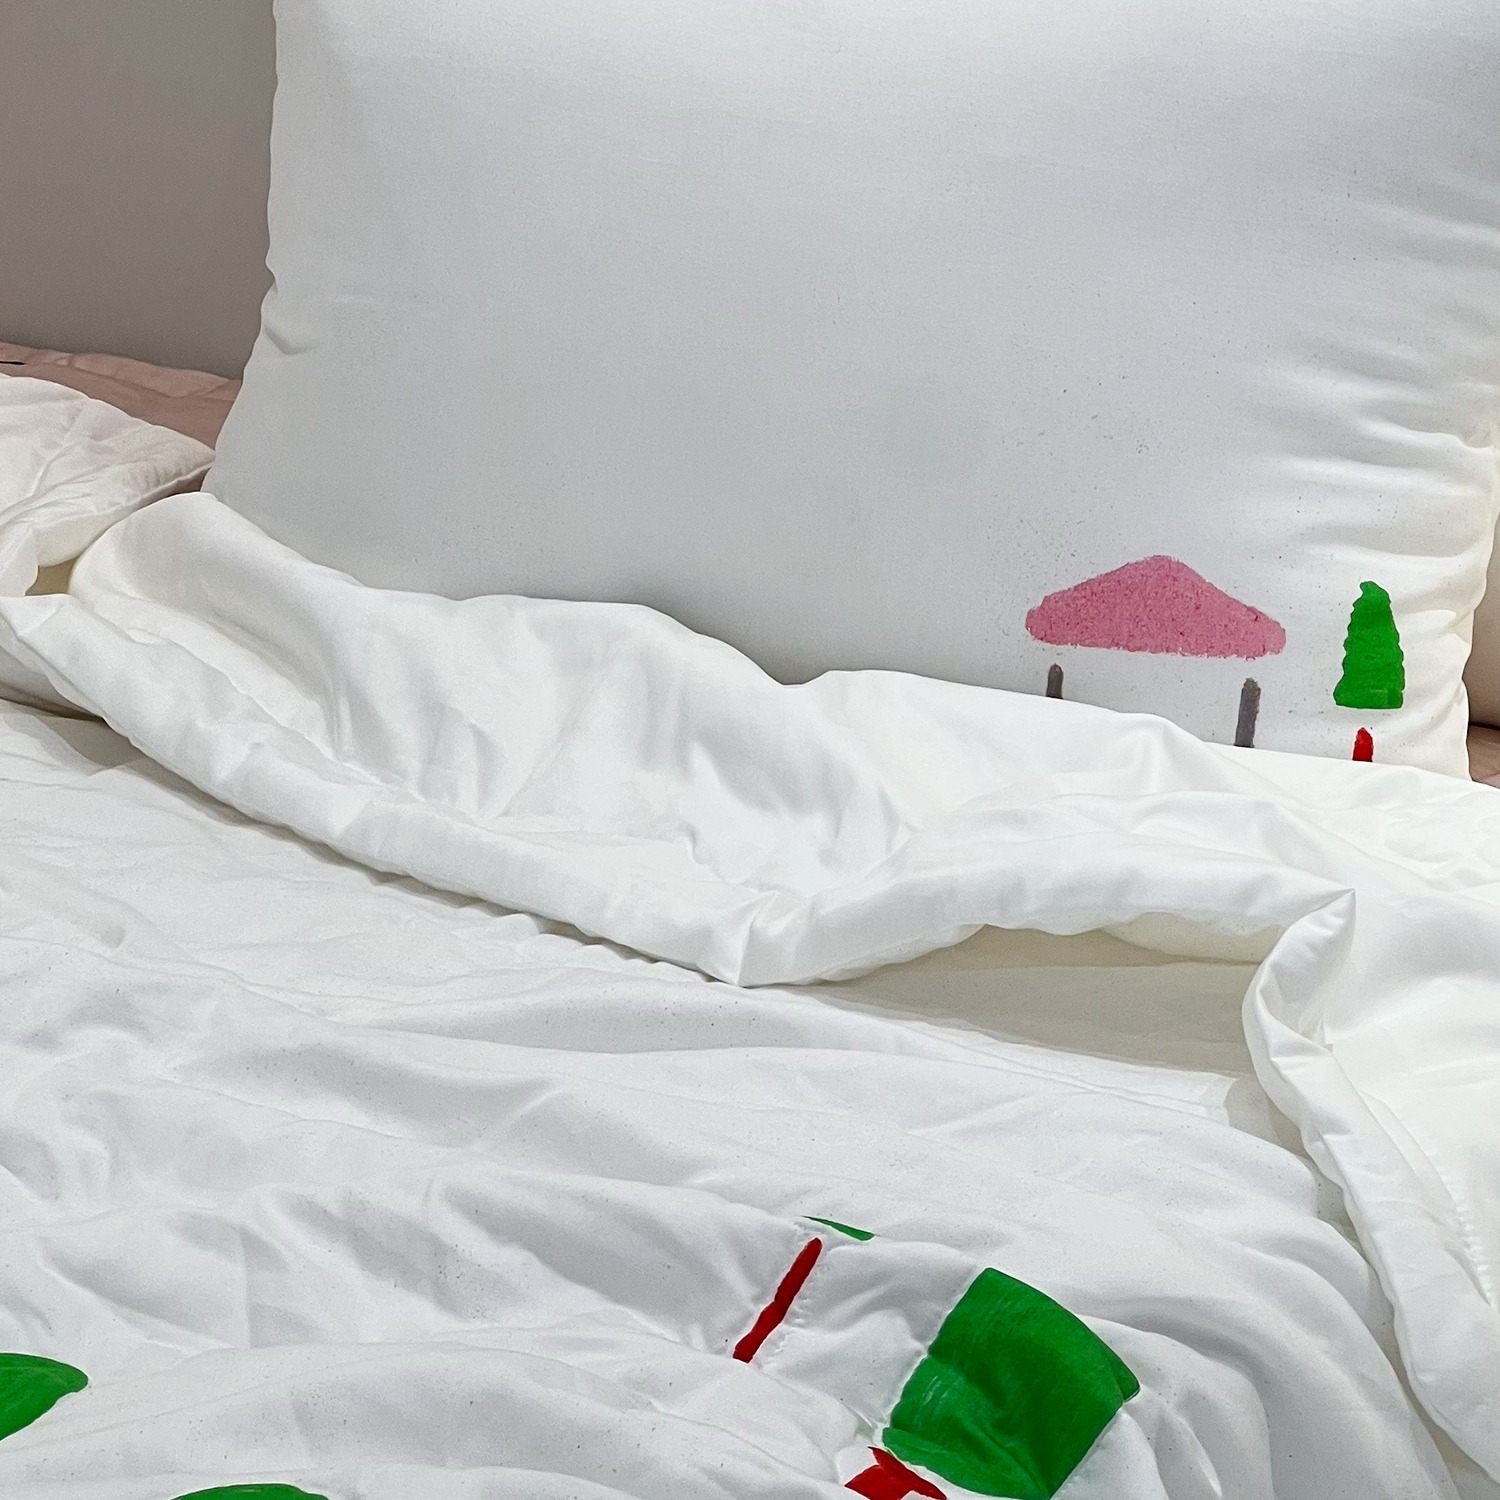 [a.o.b] Sewhasea munbanggu summer comforter bedding